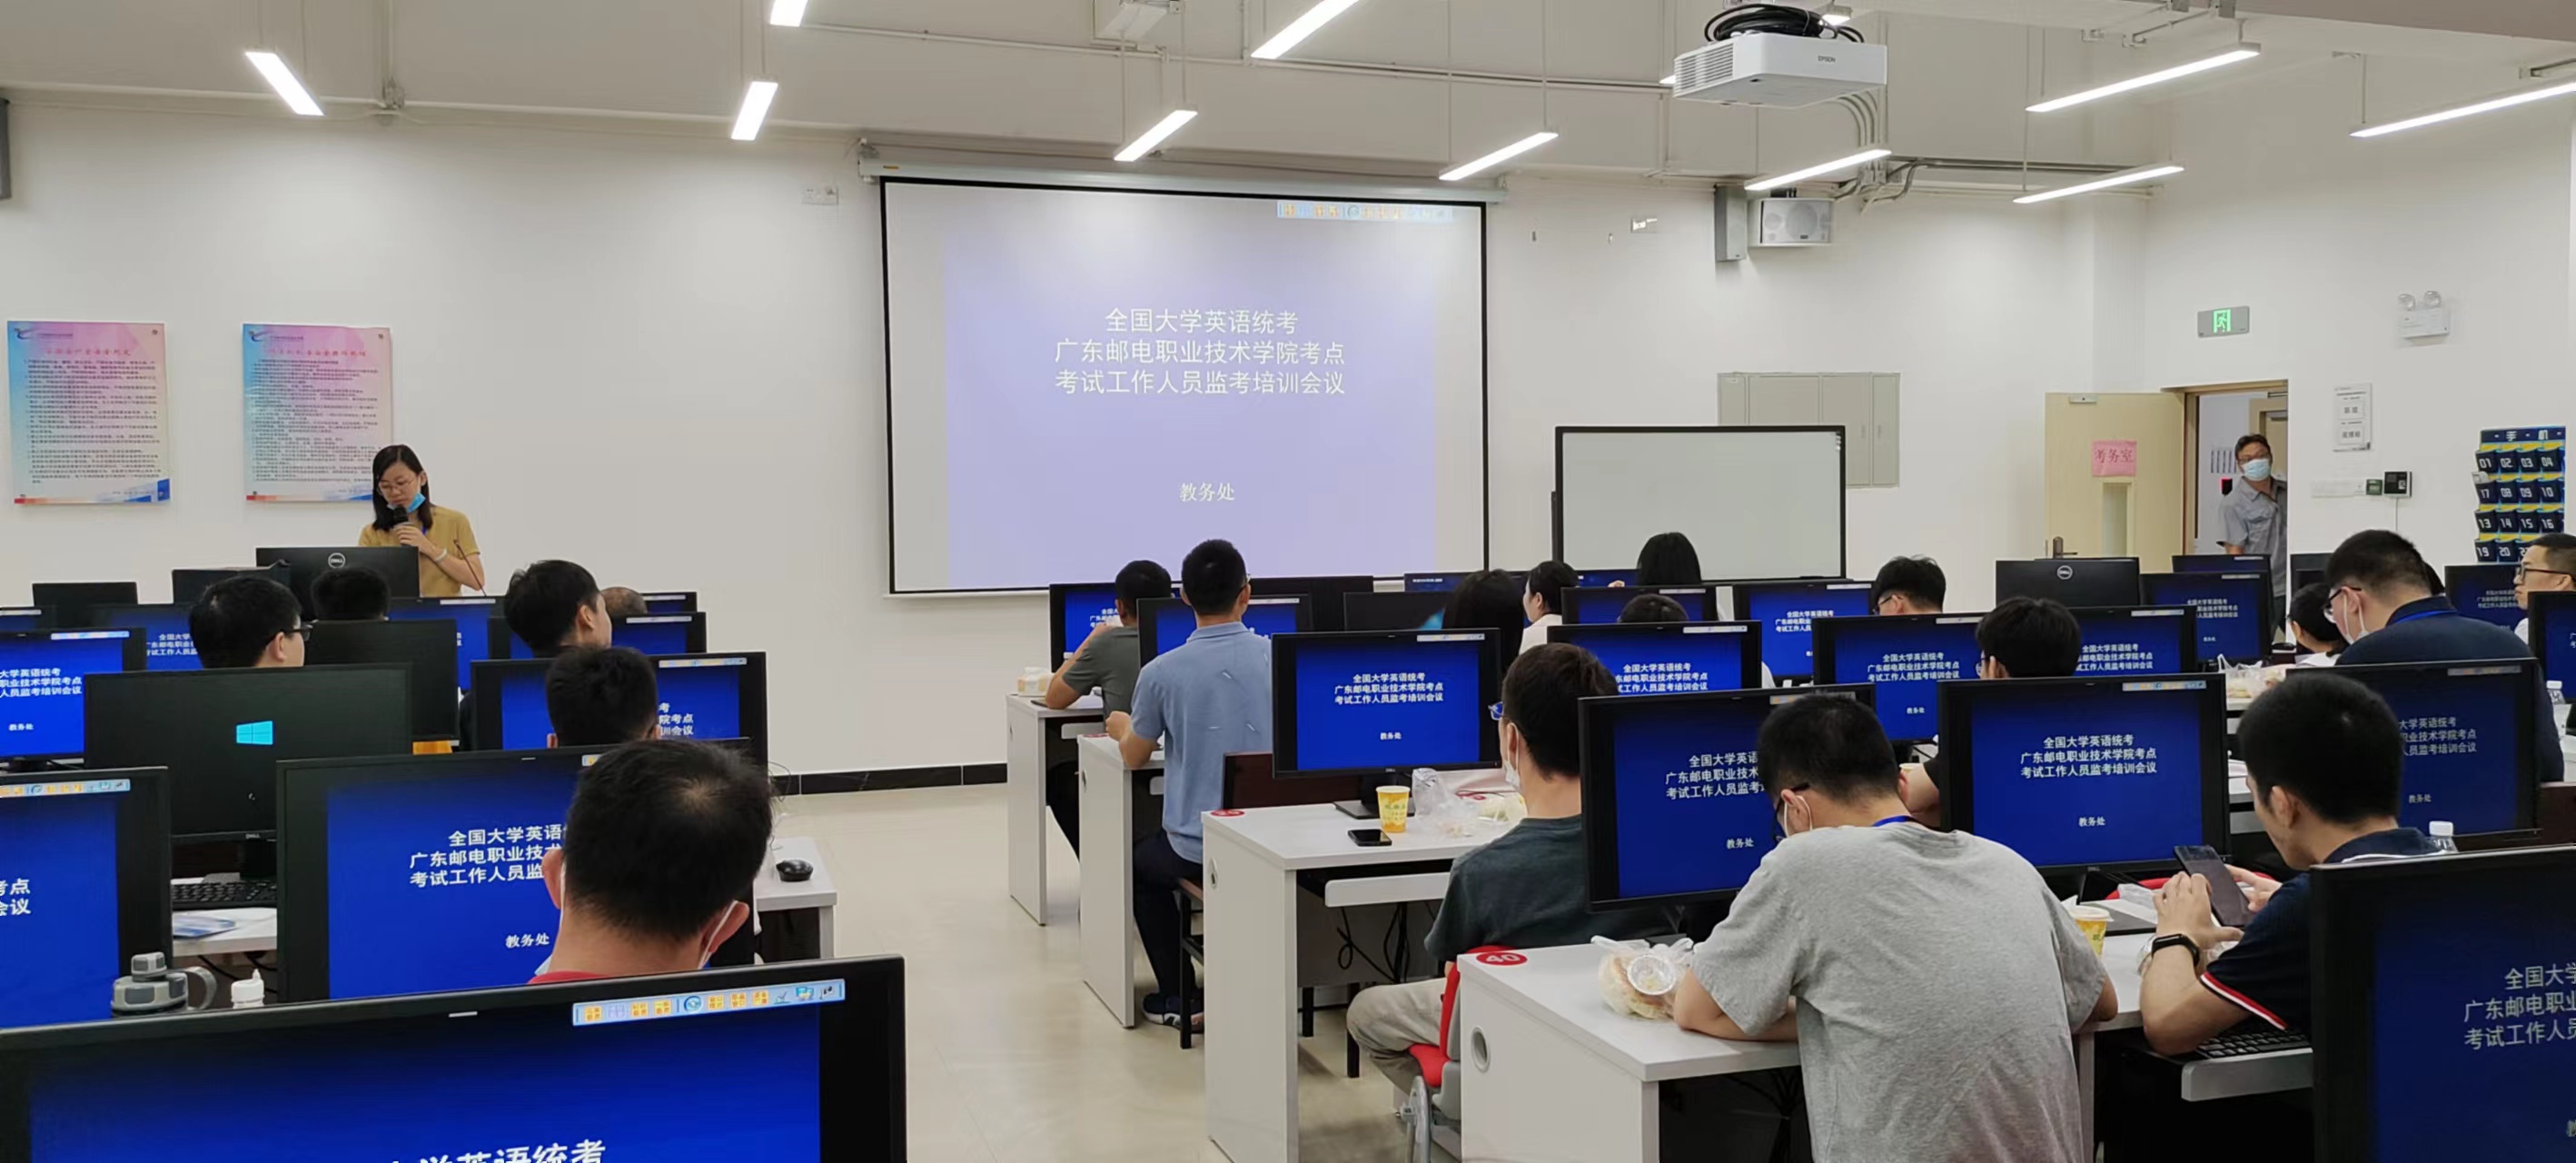 广东邮电职业技术学院江门校区2022年上半年全国大学生英语考试顺利完成